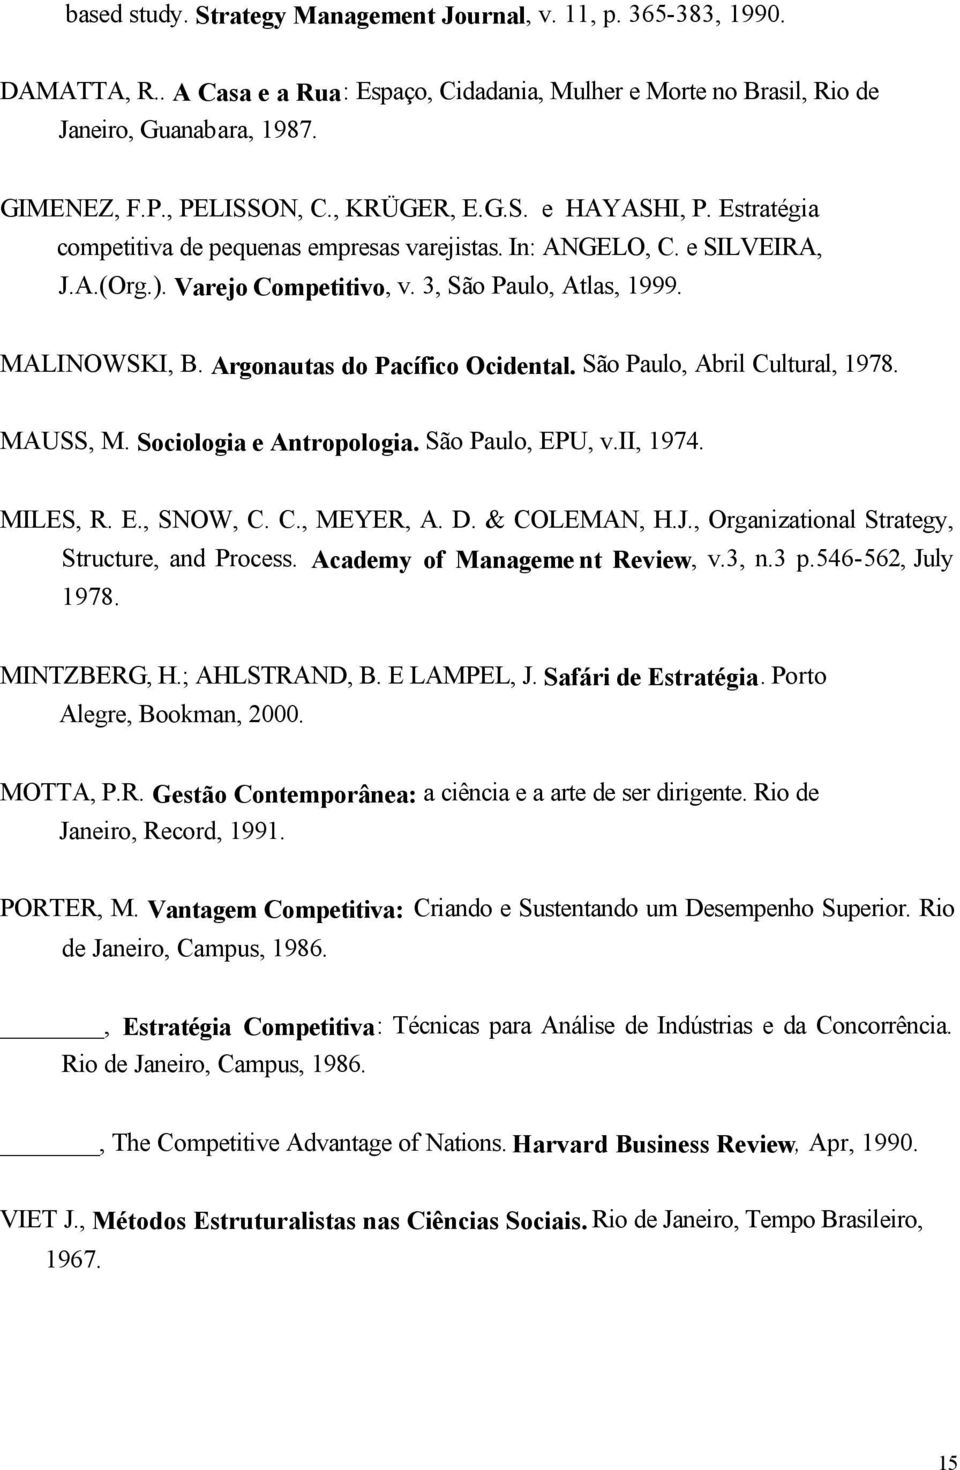 Argonautas do Pacífico Ocidntal. São Paulo, Abril Cultural, 1978. MAUSS, M. Sociologia Antropologia. São Paulo, EPU, v.ii, 1974. MILES, R. E., SNOW, C. C., MEYER, A. D. & COLEMAN, H.J.